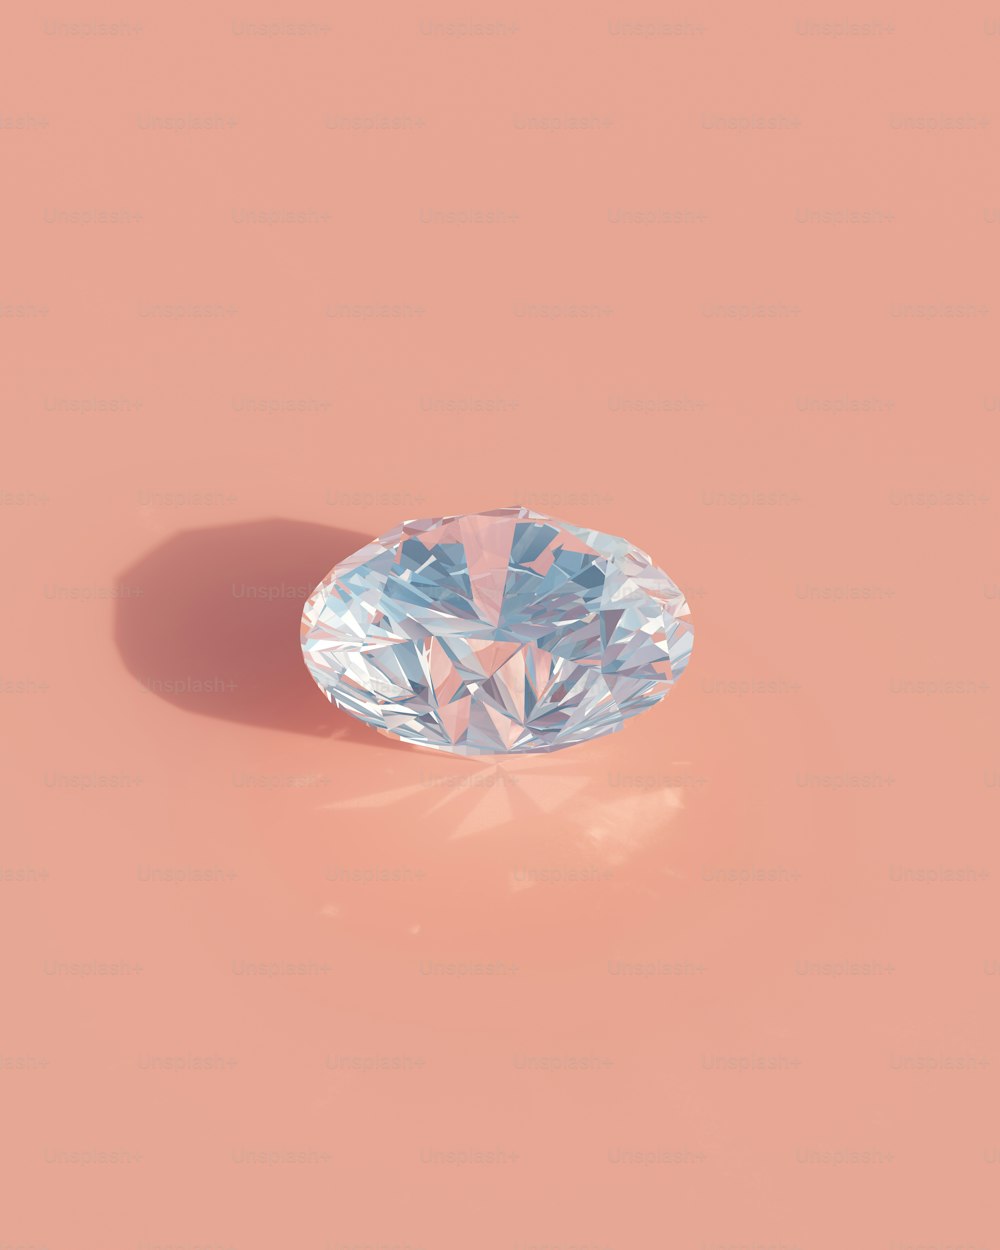 Un diamante azul claro sobre un fondo rosa